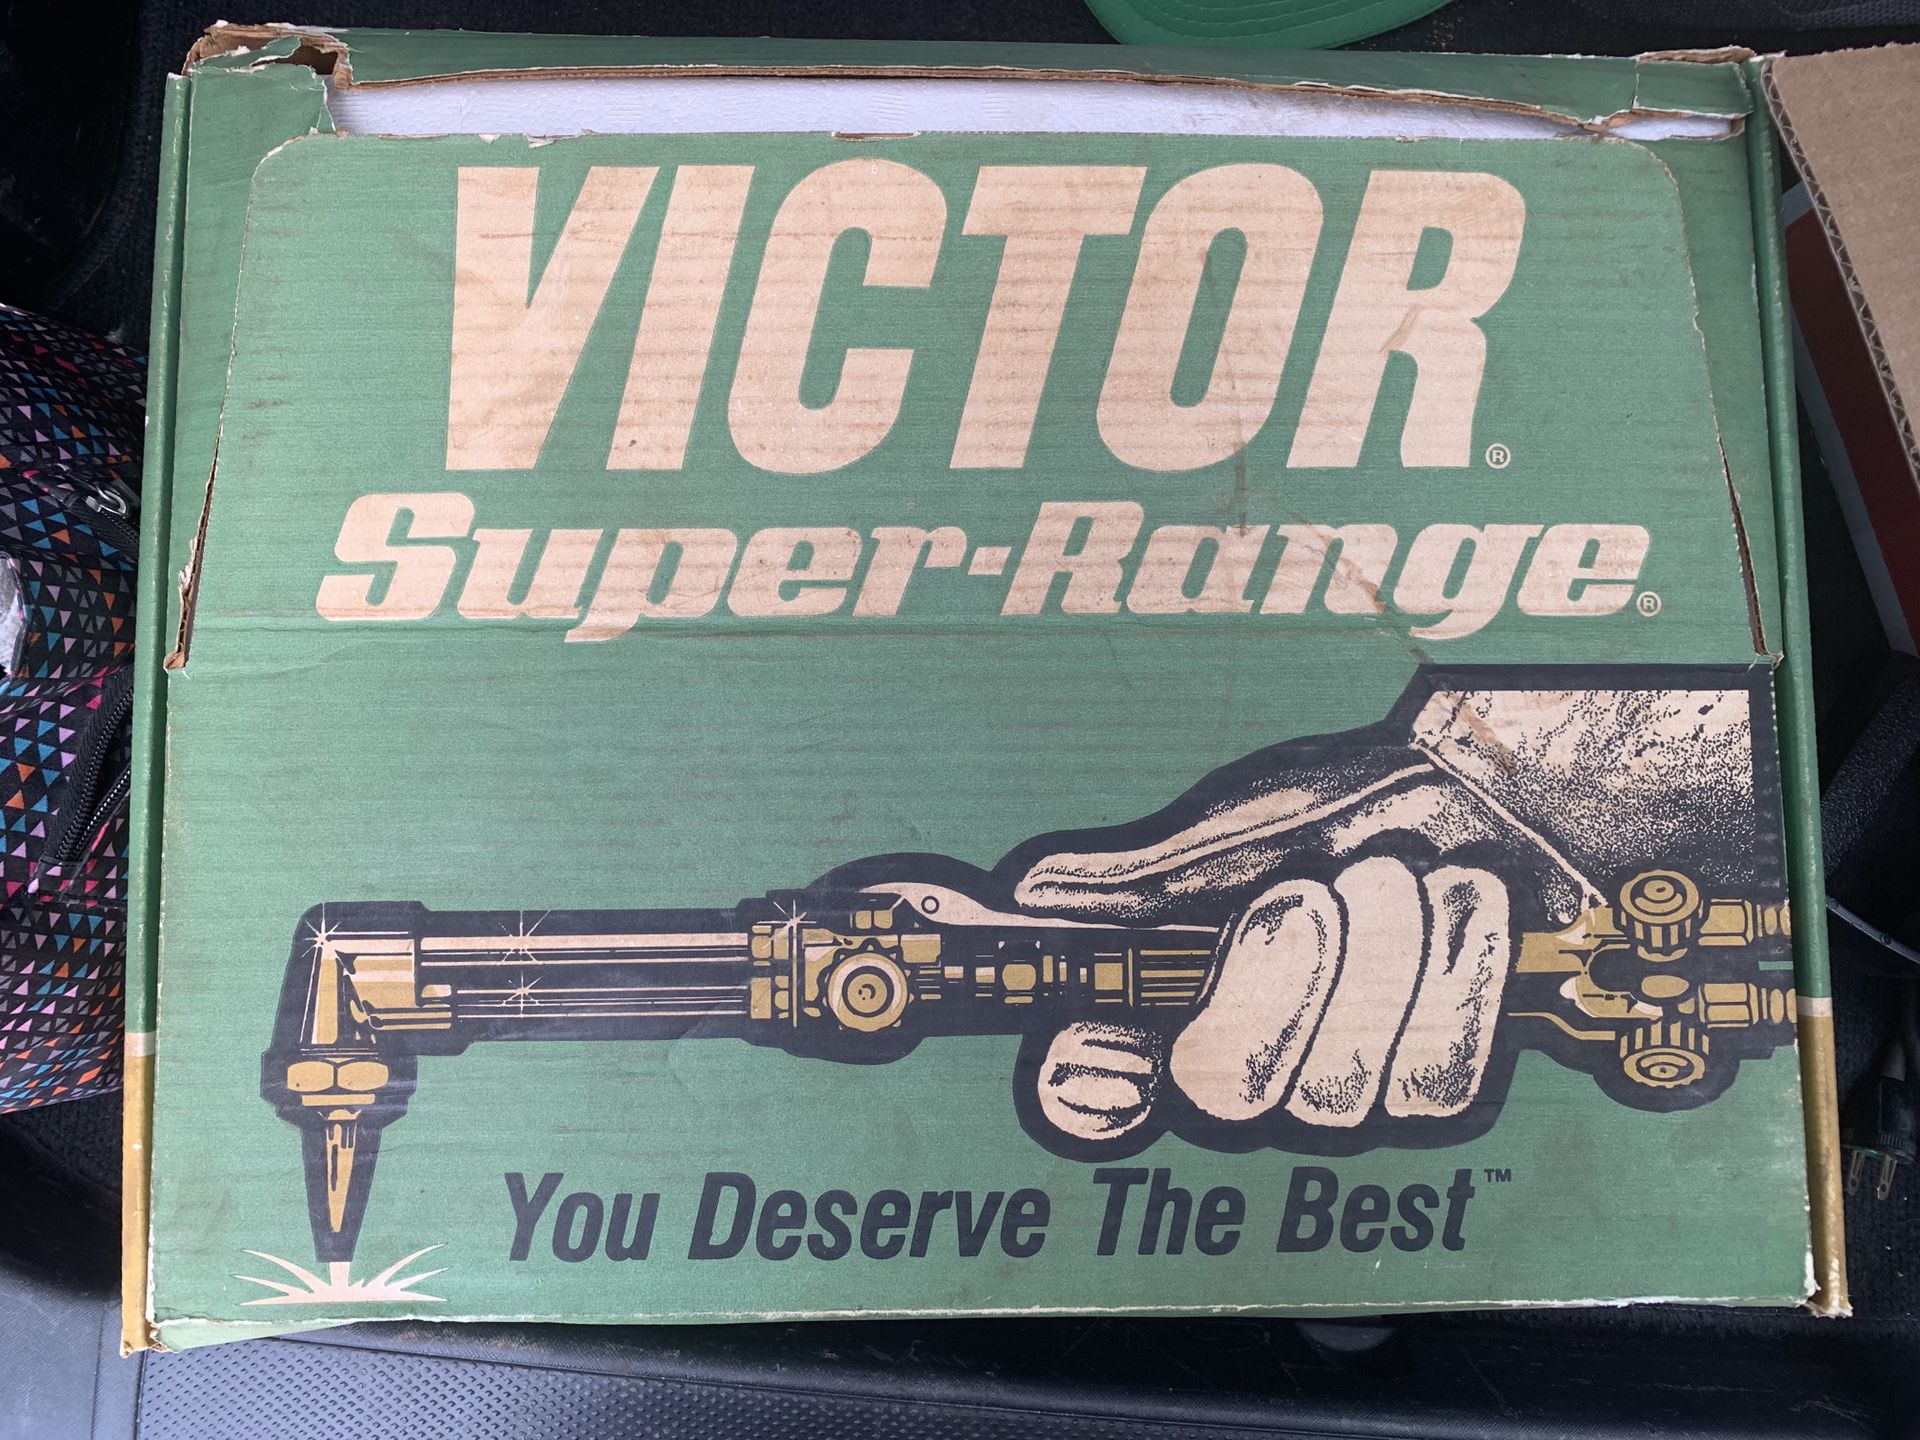 Victor super range / welder / torch